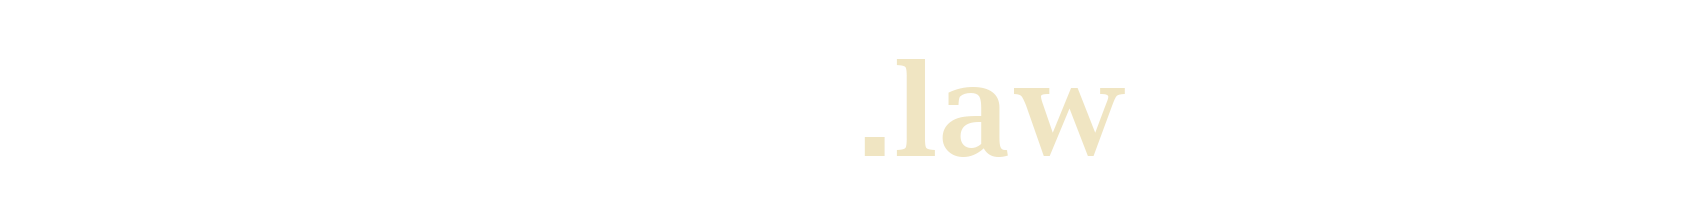 verteidiger.law Logo